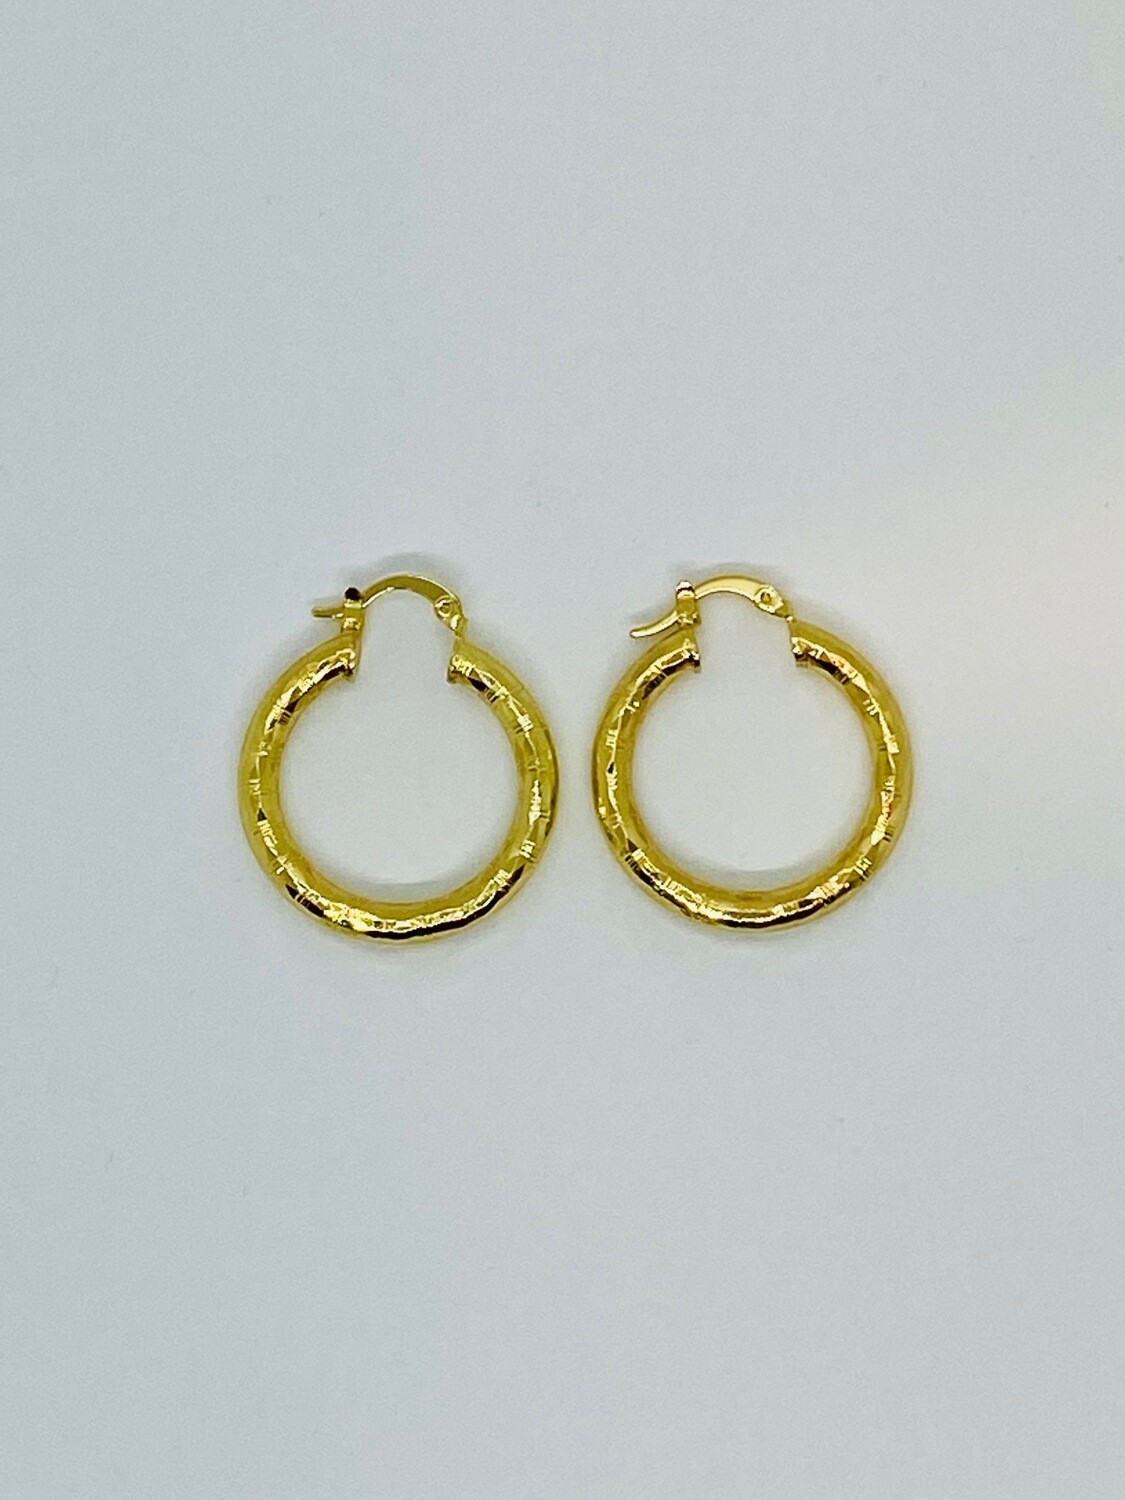 Textured Golden Earring Hoops